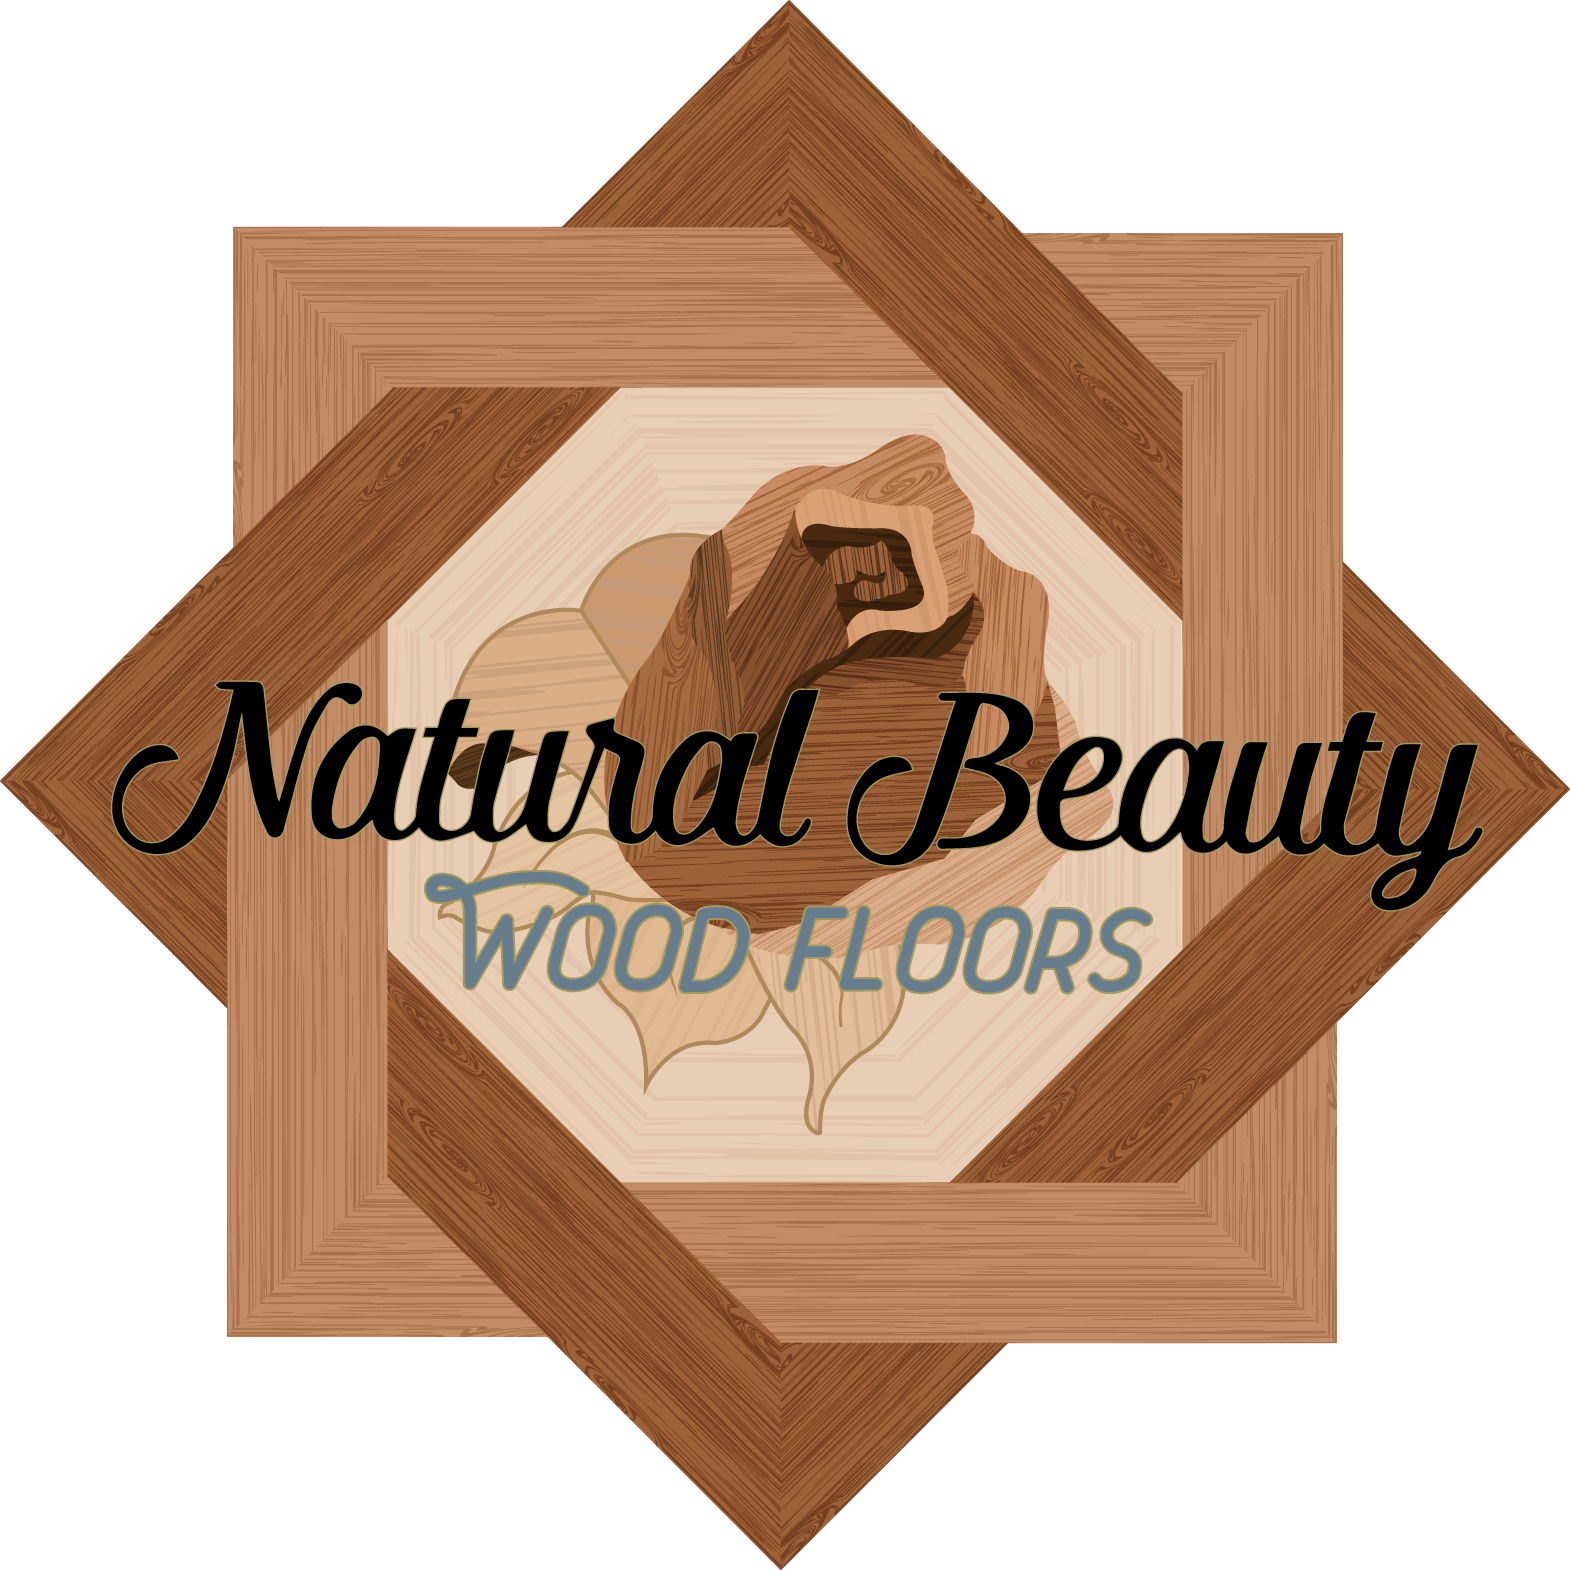 Detroit Hardwood Flooring Contractor, Contractor To Refinish Hardwood Floors